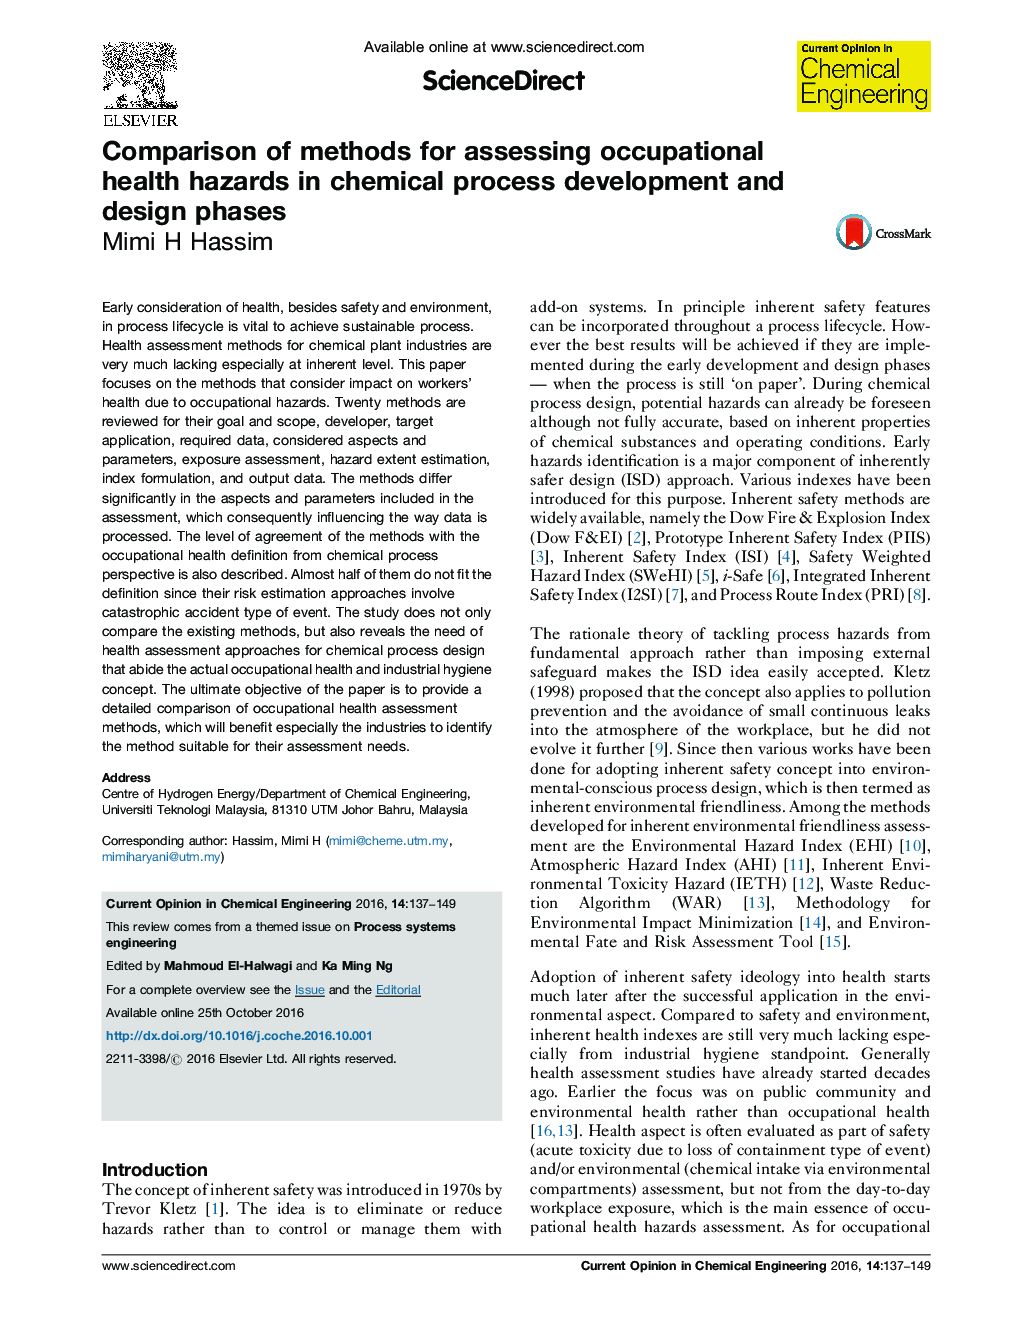 مقایسه روش های ارزیابی خطرات بهداشت حرفه ای در فرآیند توسعه و طراحی شیمیایی 